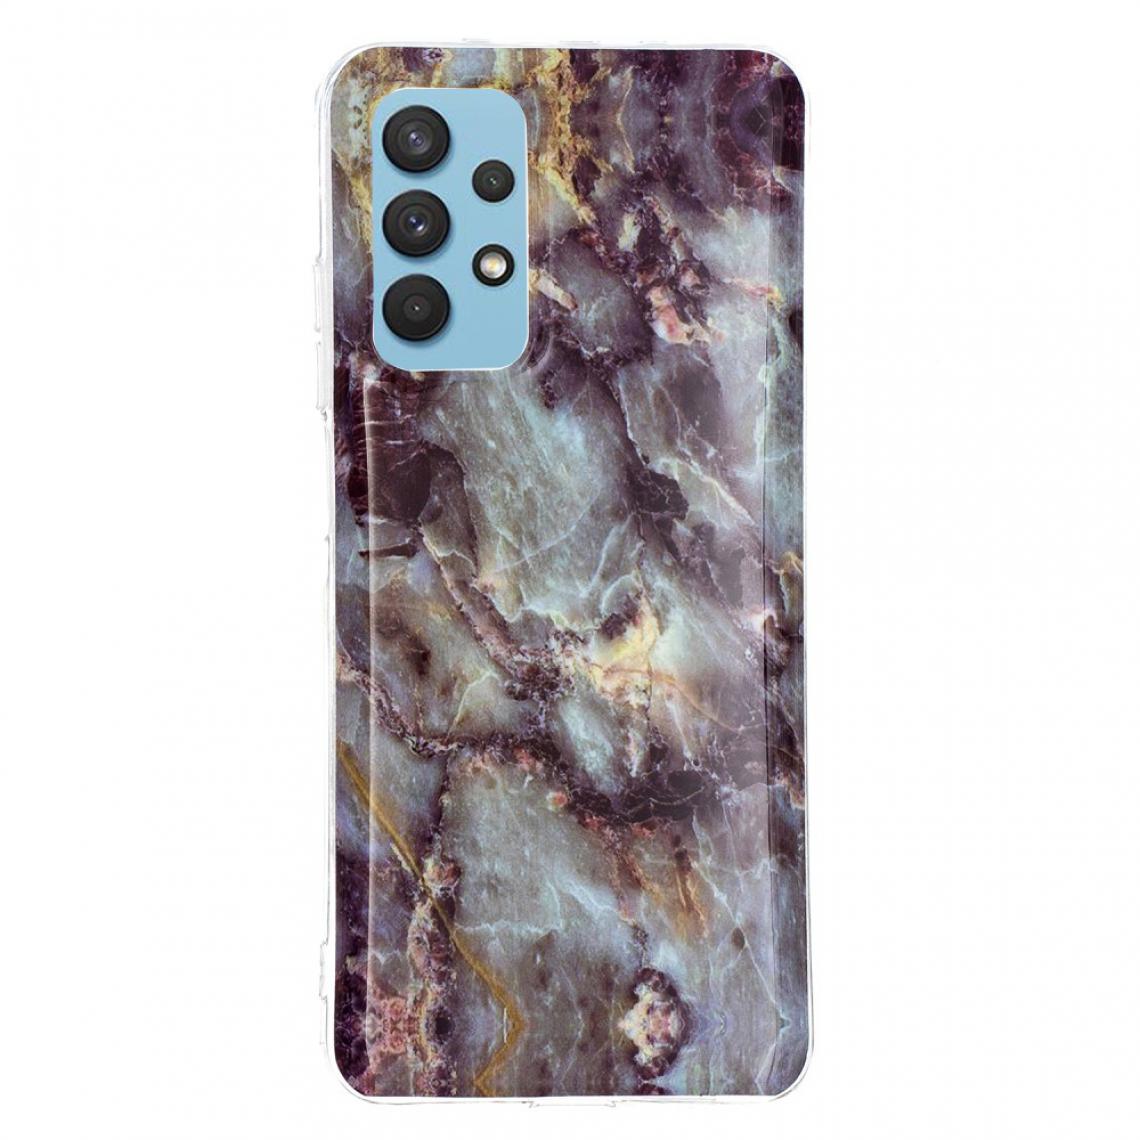 Other - Coque en TPU Impression de motifs de marbre anti-rayures IMD gris pour votre Samsung Galaxy A32 4G (EU Version) - Coque, étui smartphone